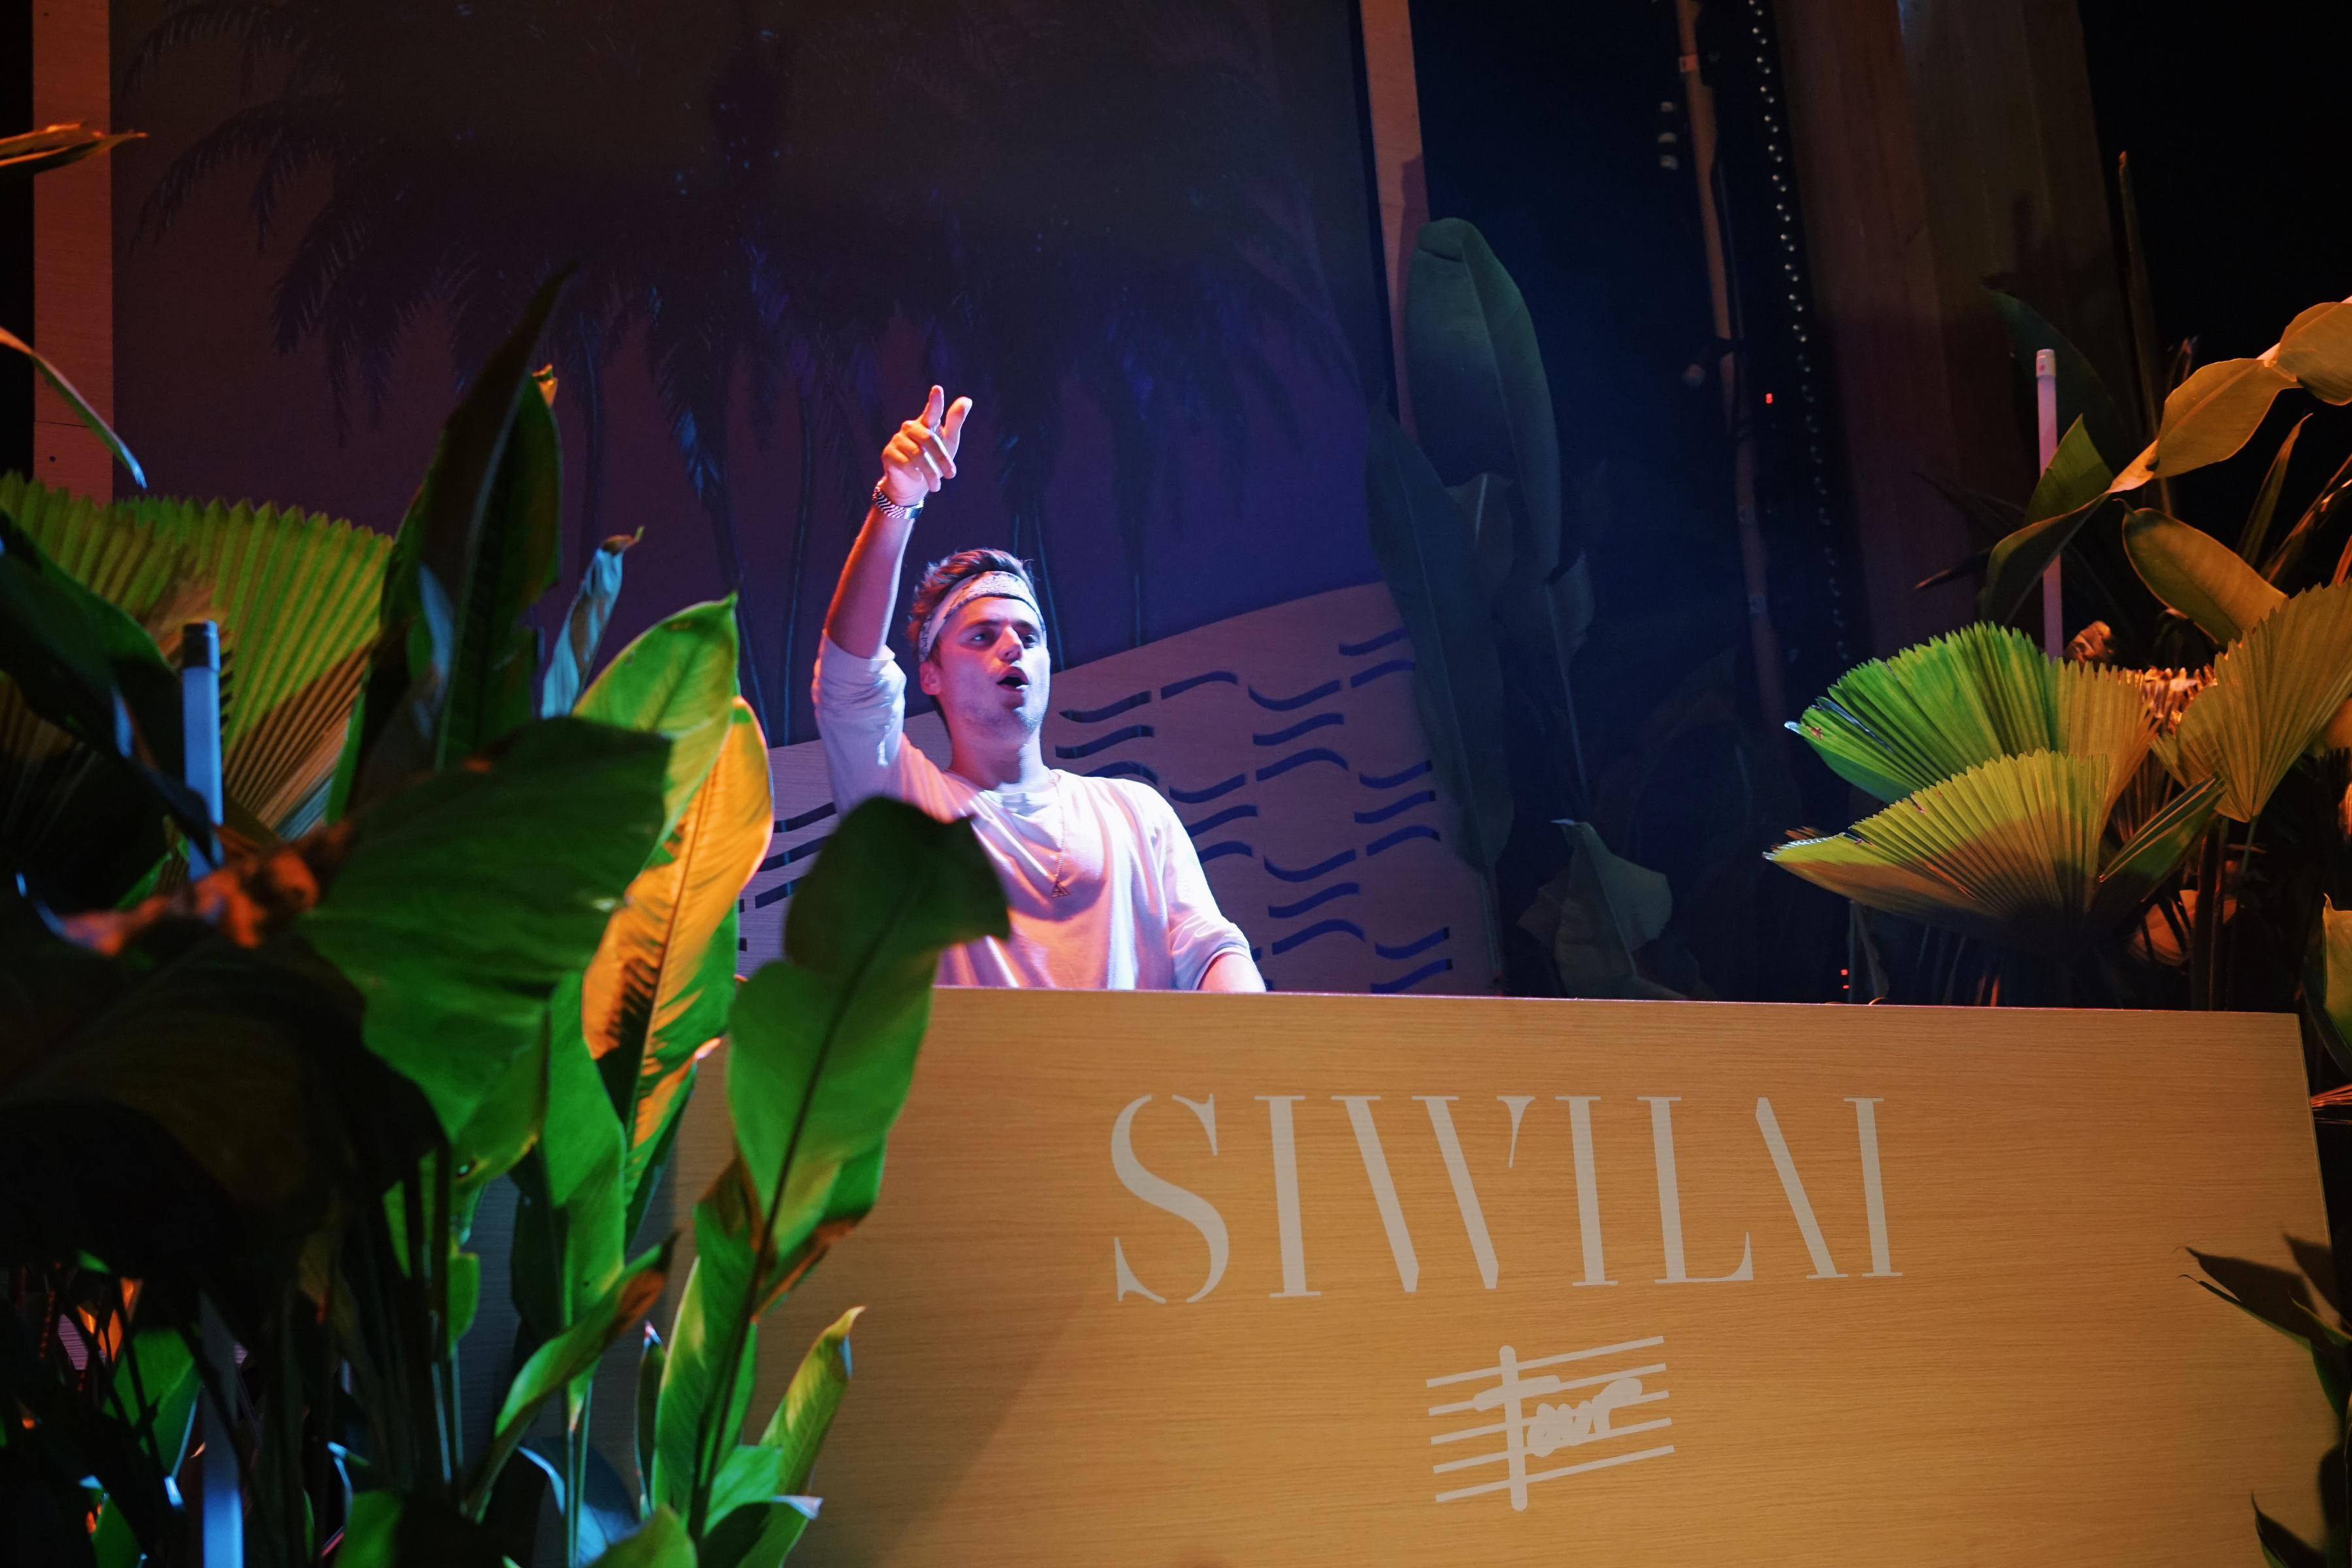 เก็บตกงาน SIWILAI Tour ที่ได้ศิลปิน melodic house ระดับโลก KLINGANDE มาสร้างความสนุกตลอดคืน